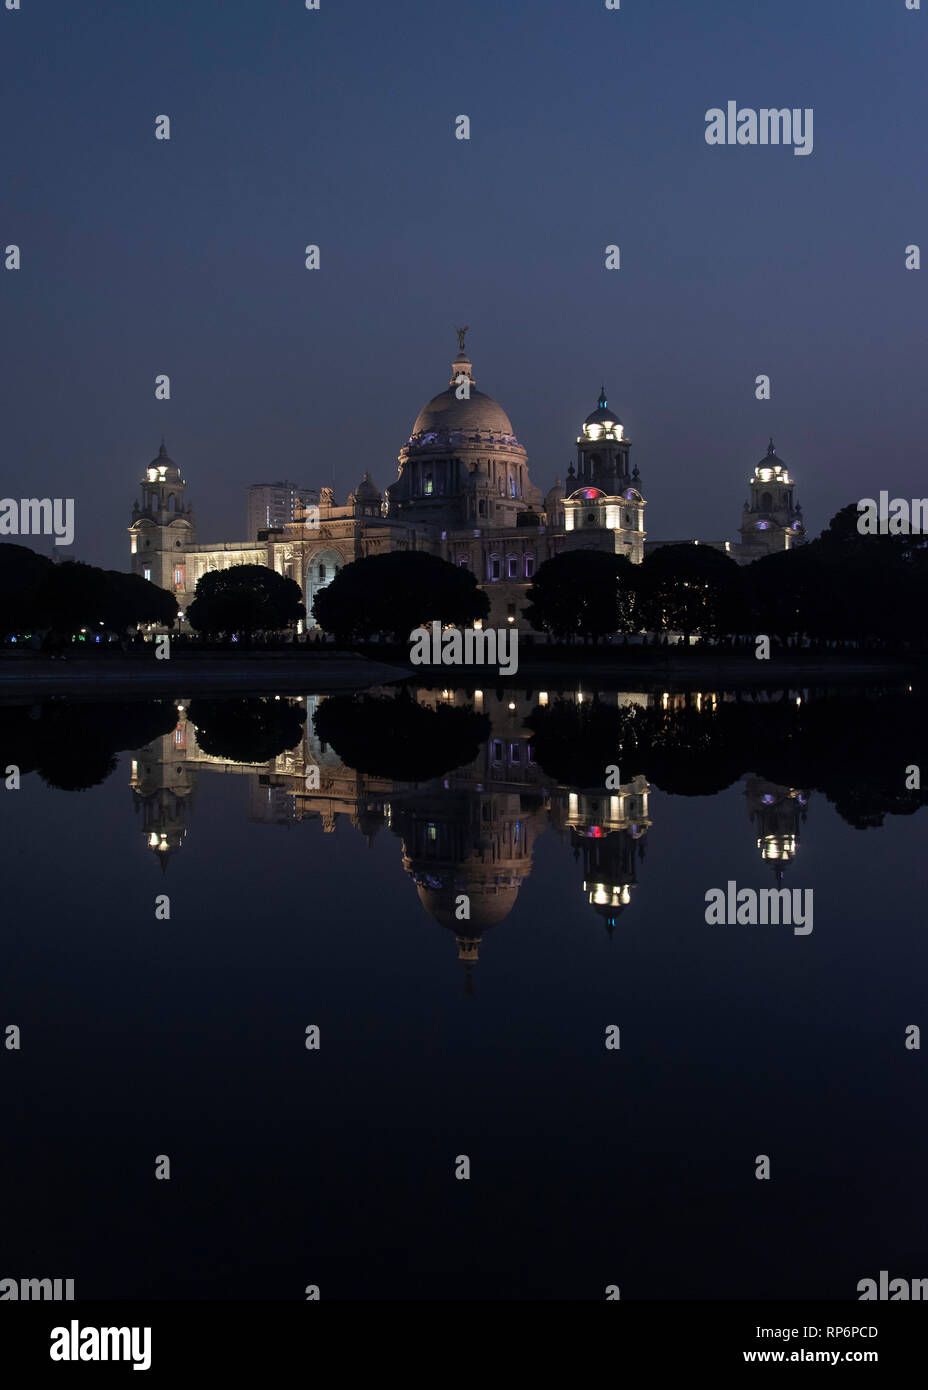 Eine Nacht Dämmerung Abend Blick auf die Queen Victoria Memorial in Kalkutta spiegelt sich im Wasser der westlichen Teich gespiegelt. Stockfoto